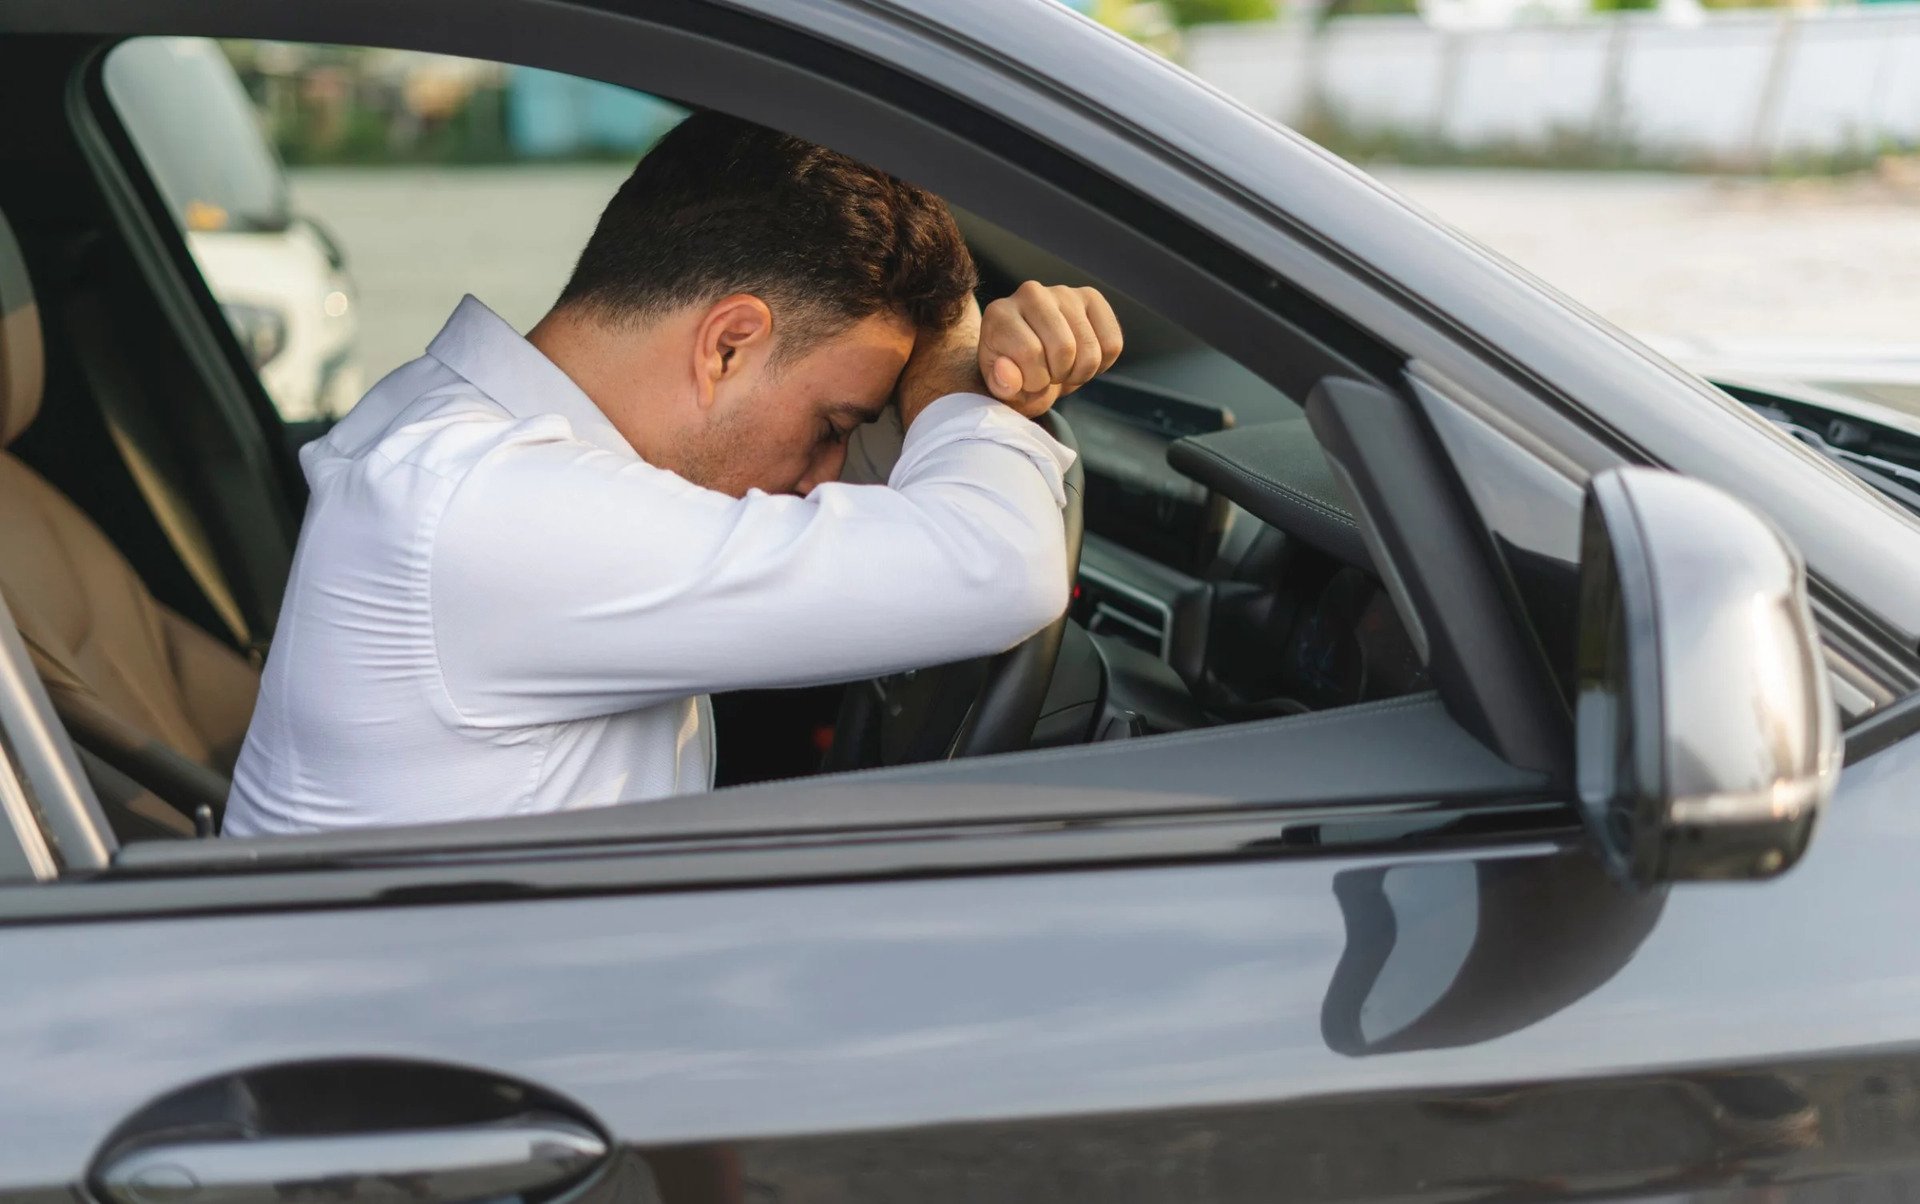 Chứng ngưng thở khi ngủ do tắc nghẽn có thể làm tăng nguy cơ buồn ngủ khi đang lái xe. Ảnh: SONGSAK ROHPRASIT/MOMENT RF